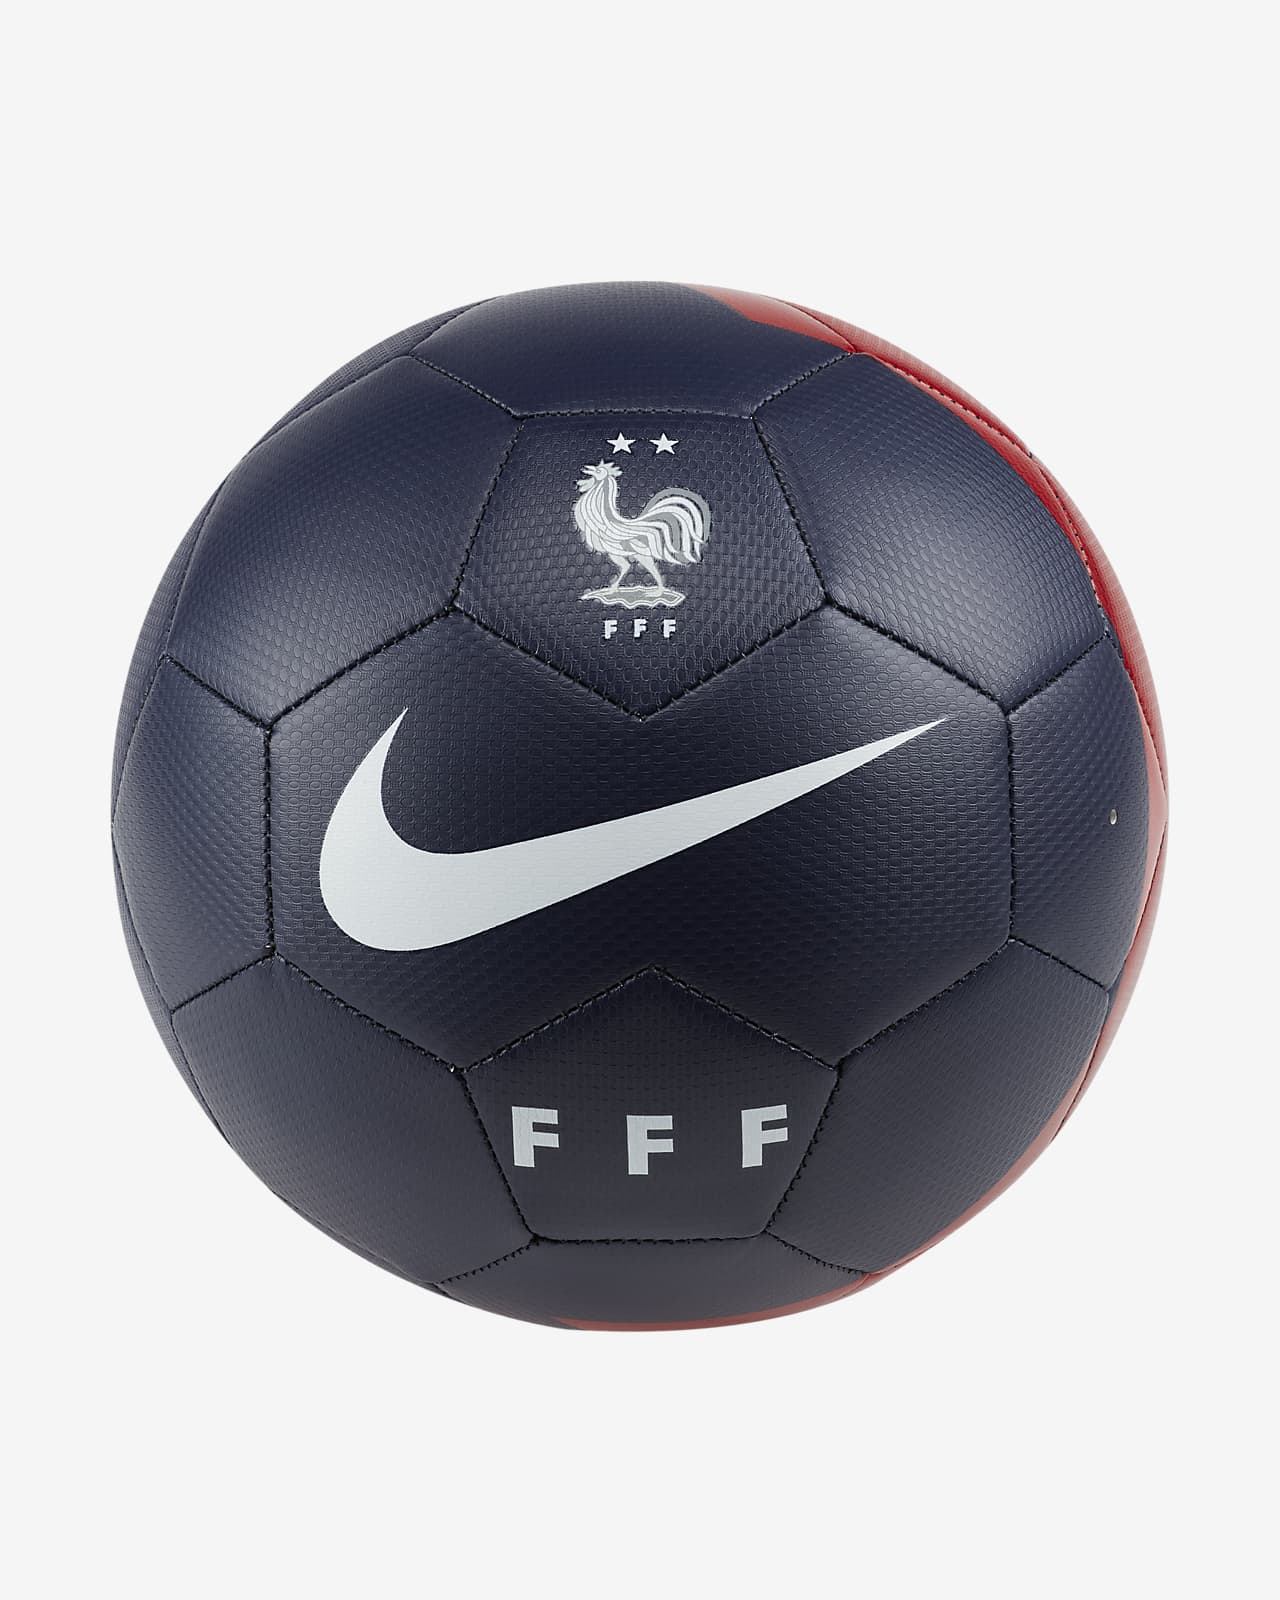 FFF Prestige futball-labda